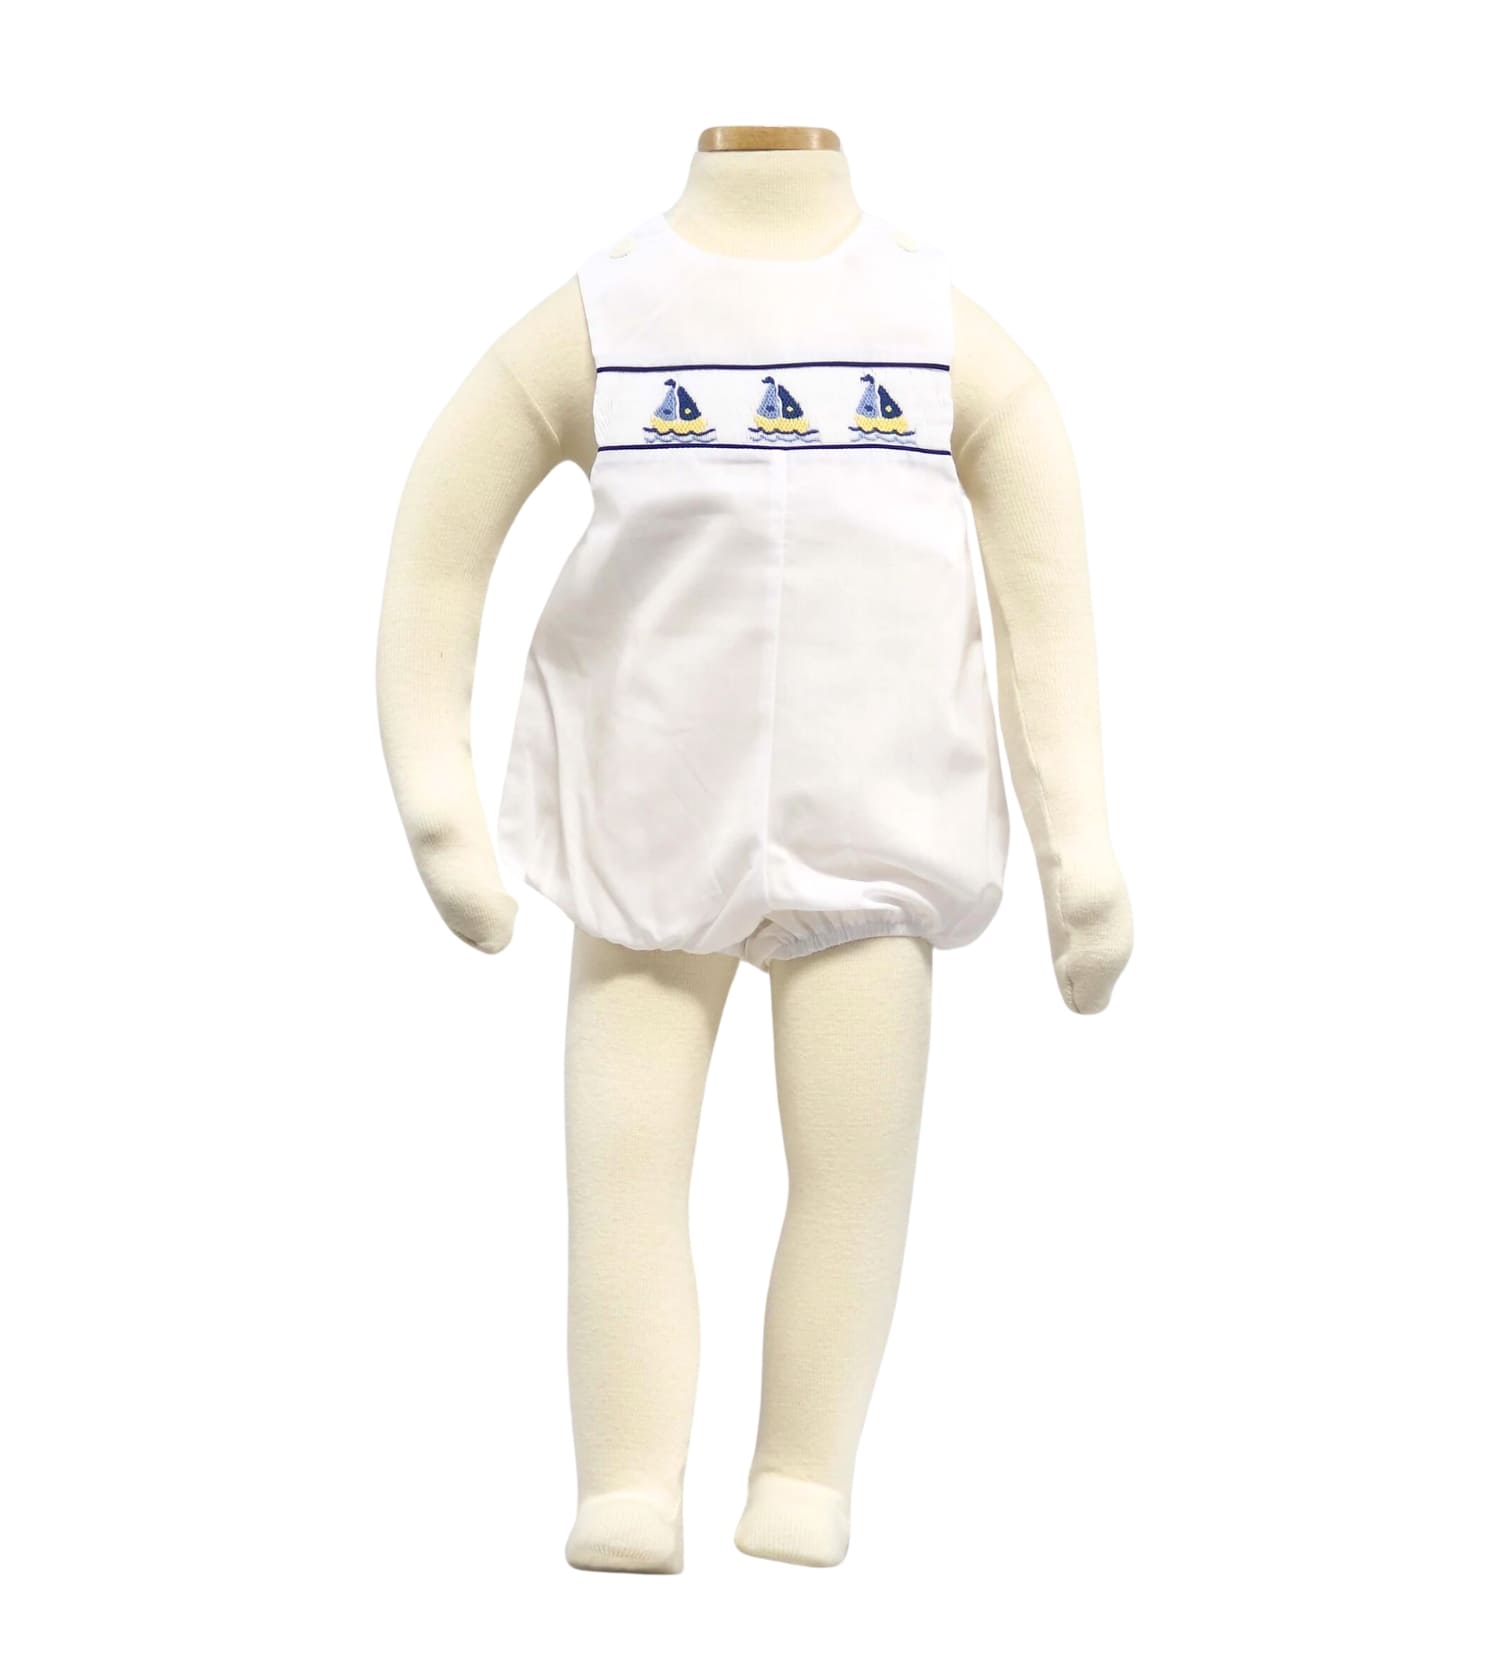 Smocked Bodysuit with Boat Motif For Boy Infant